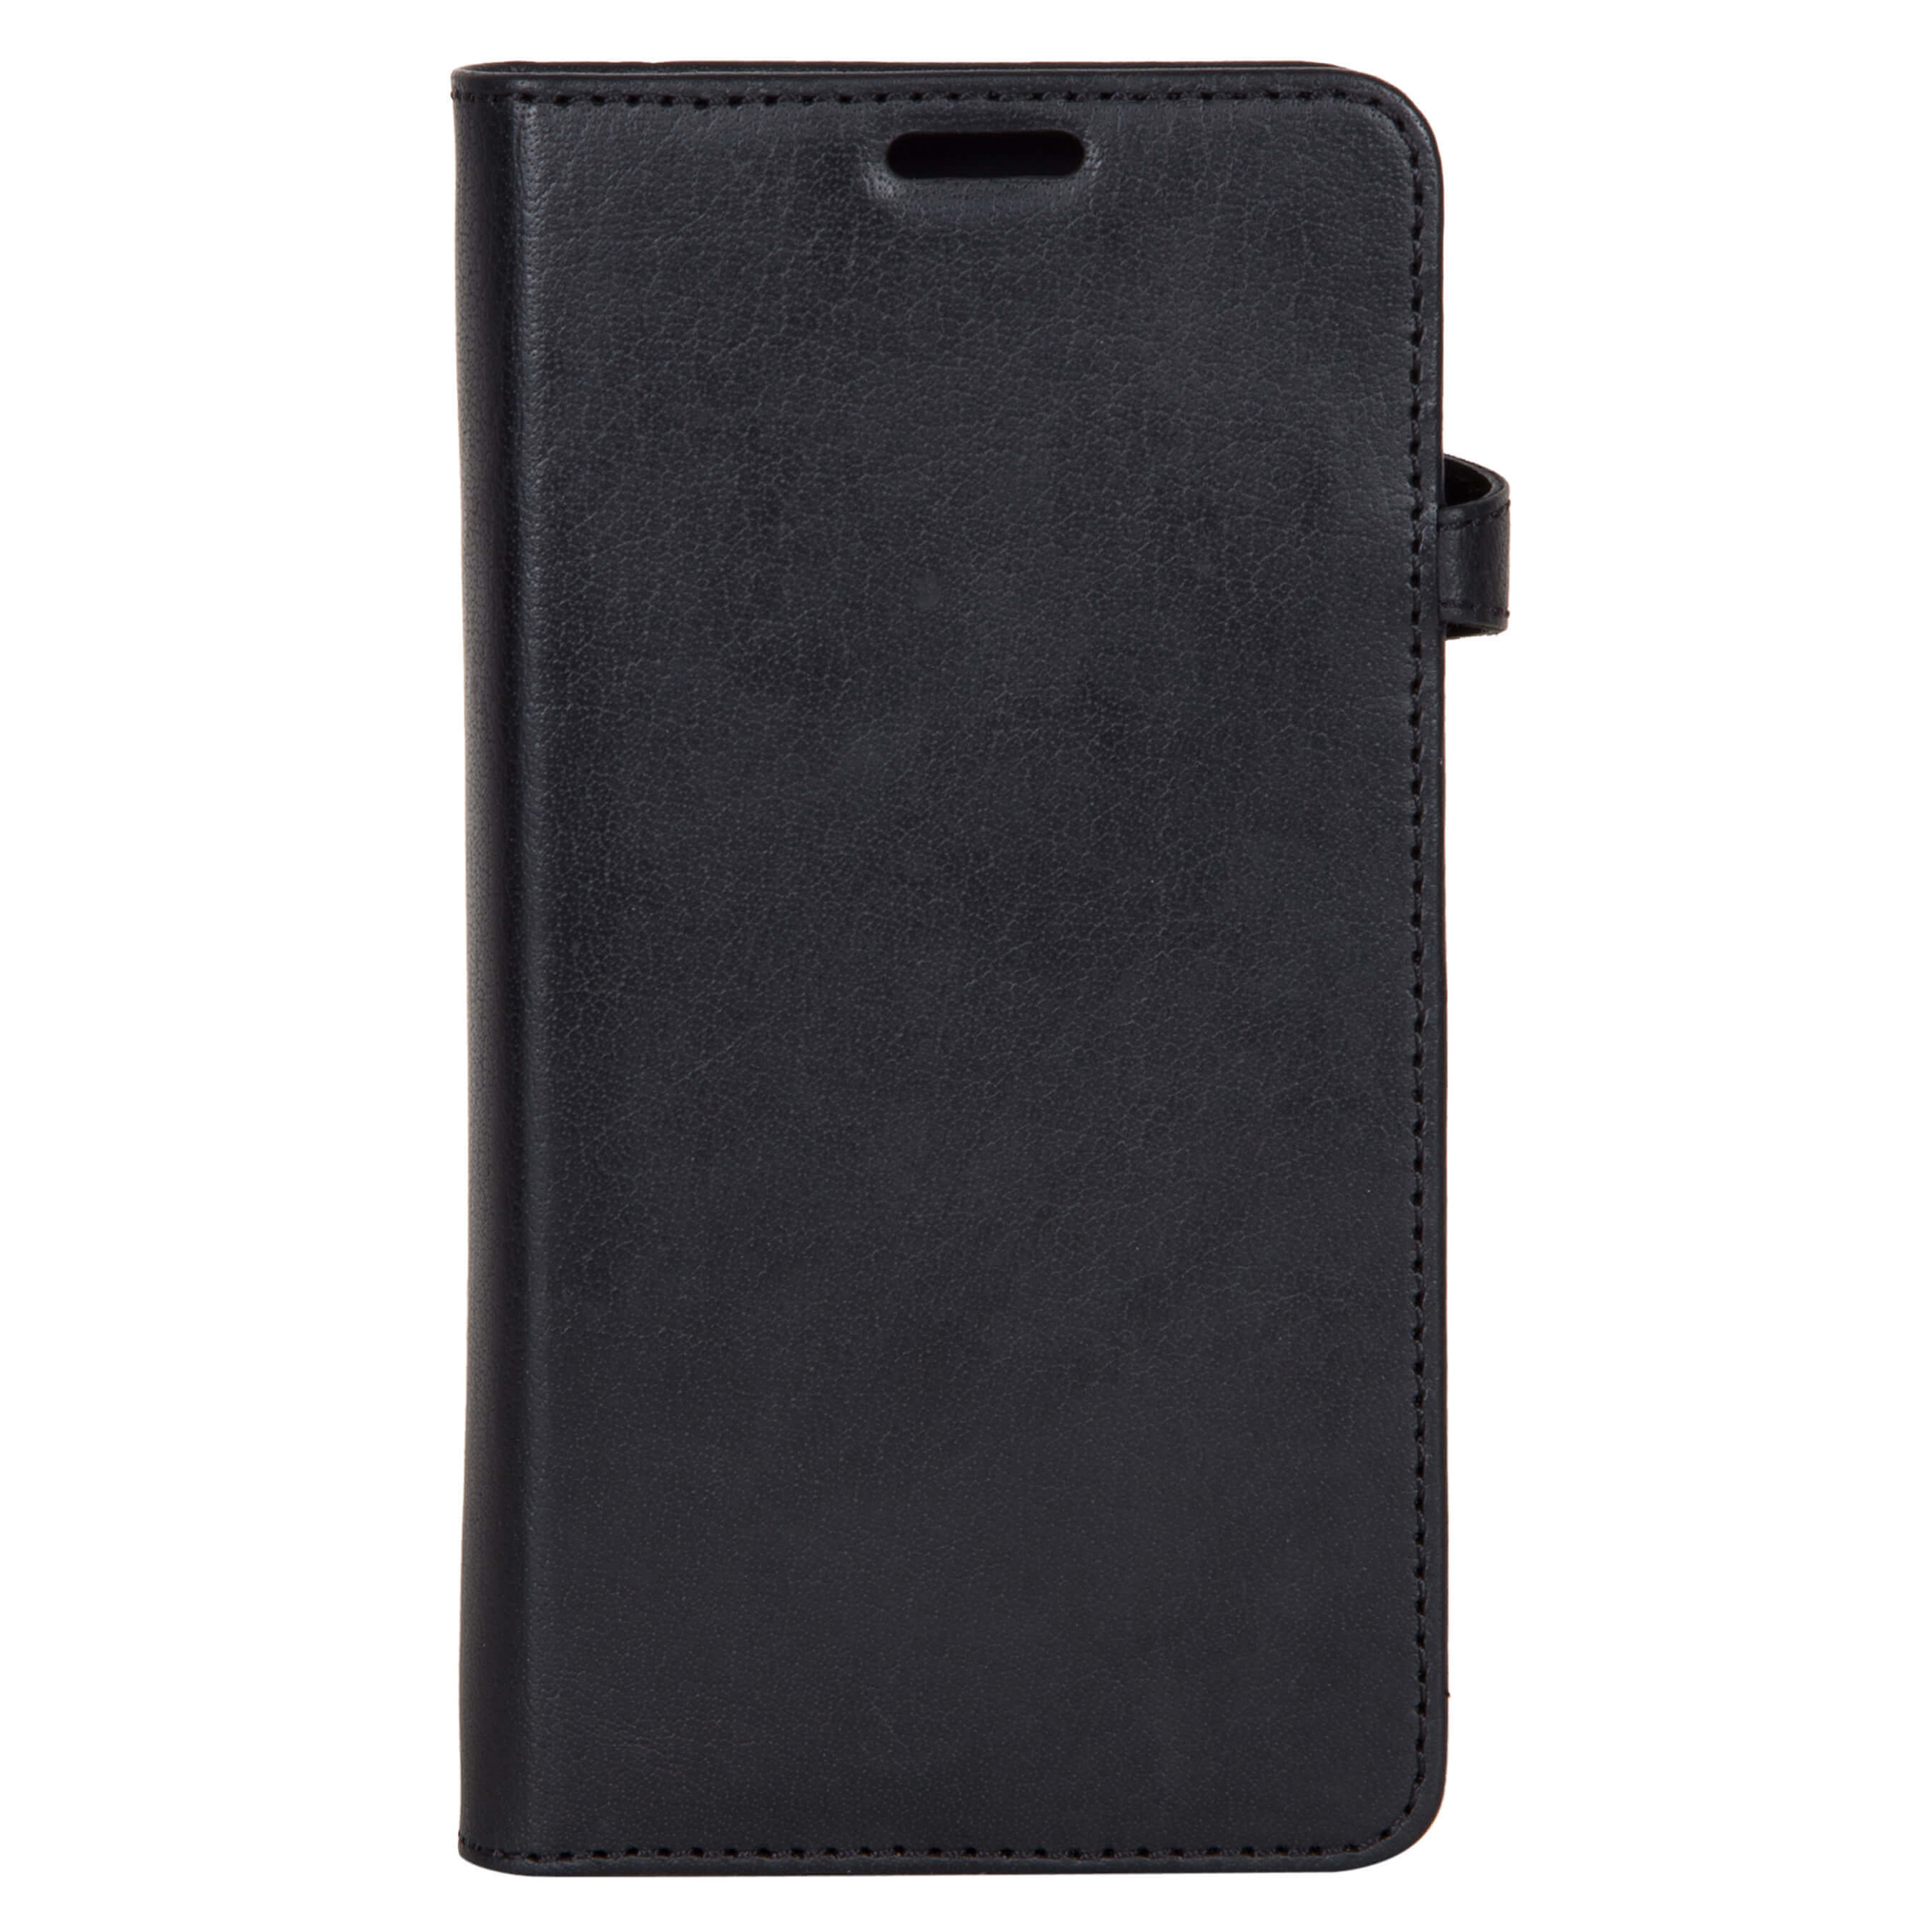 Wallet Case Black - Samsung J5 2017 